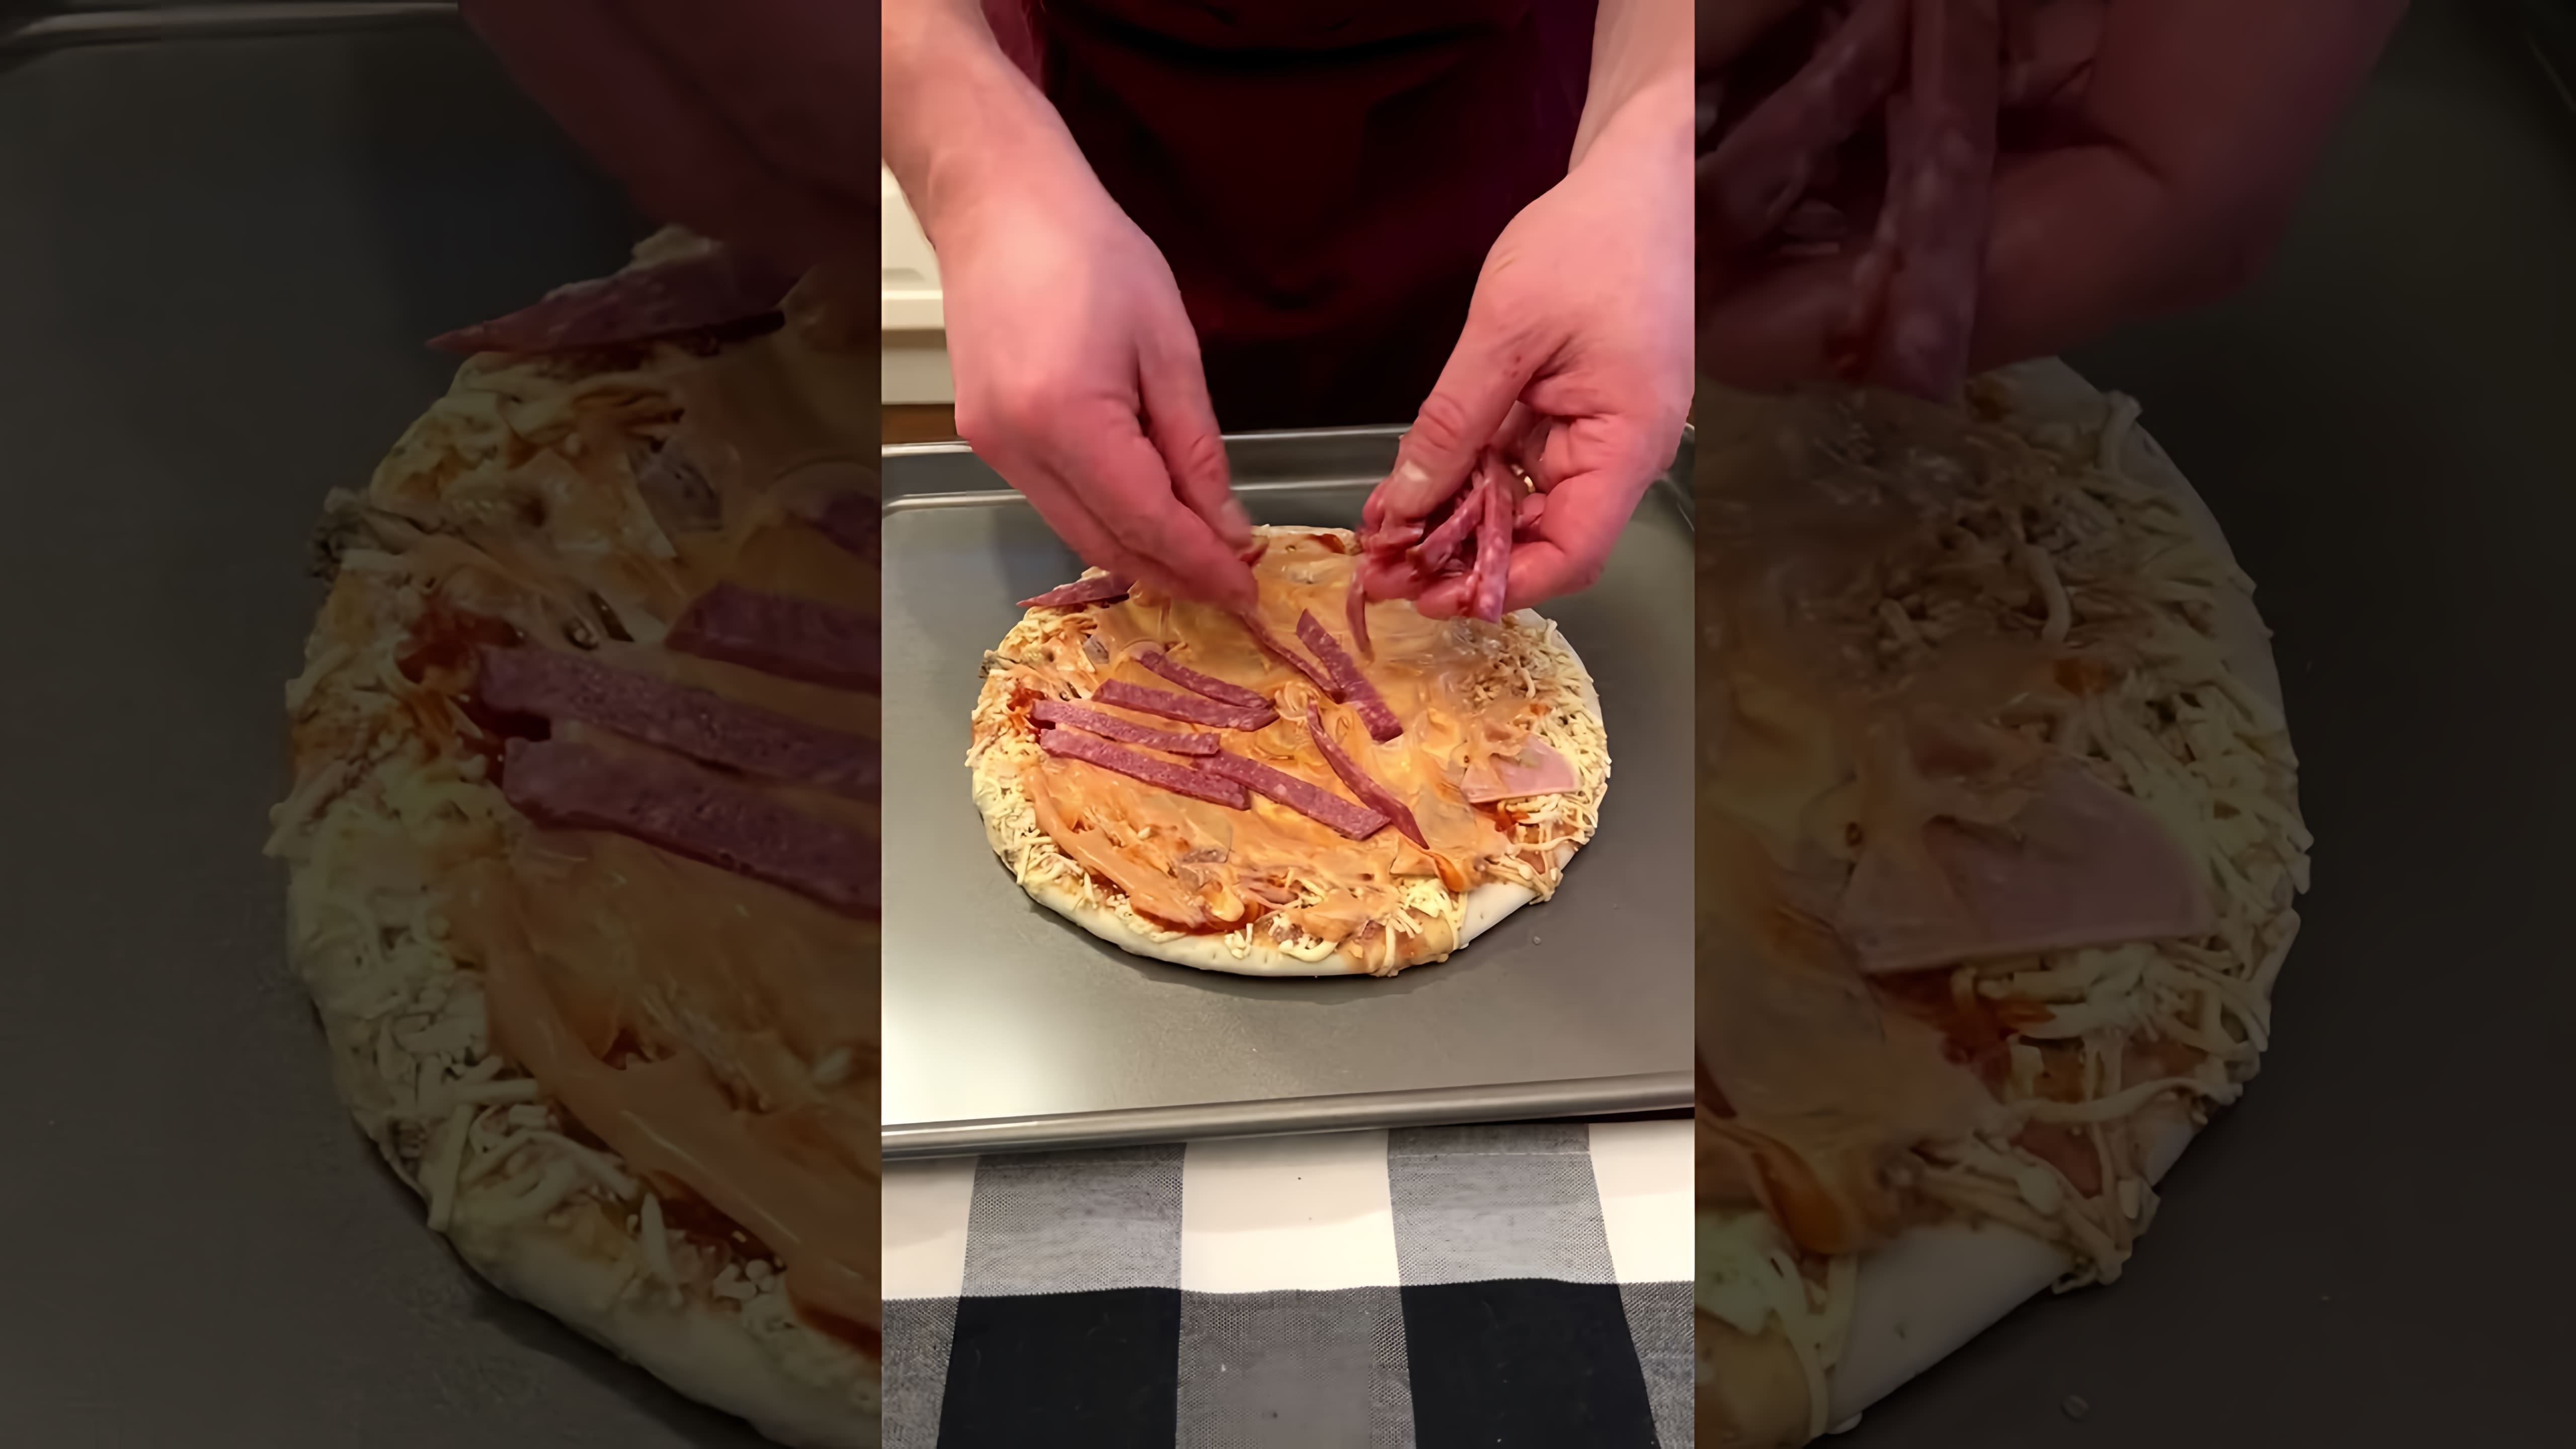 В этом видео демонстрируется процесс приготовления замороженной пиццы в институте